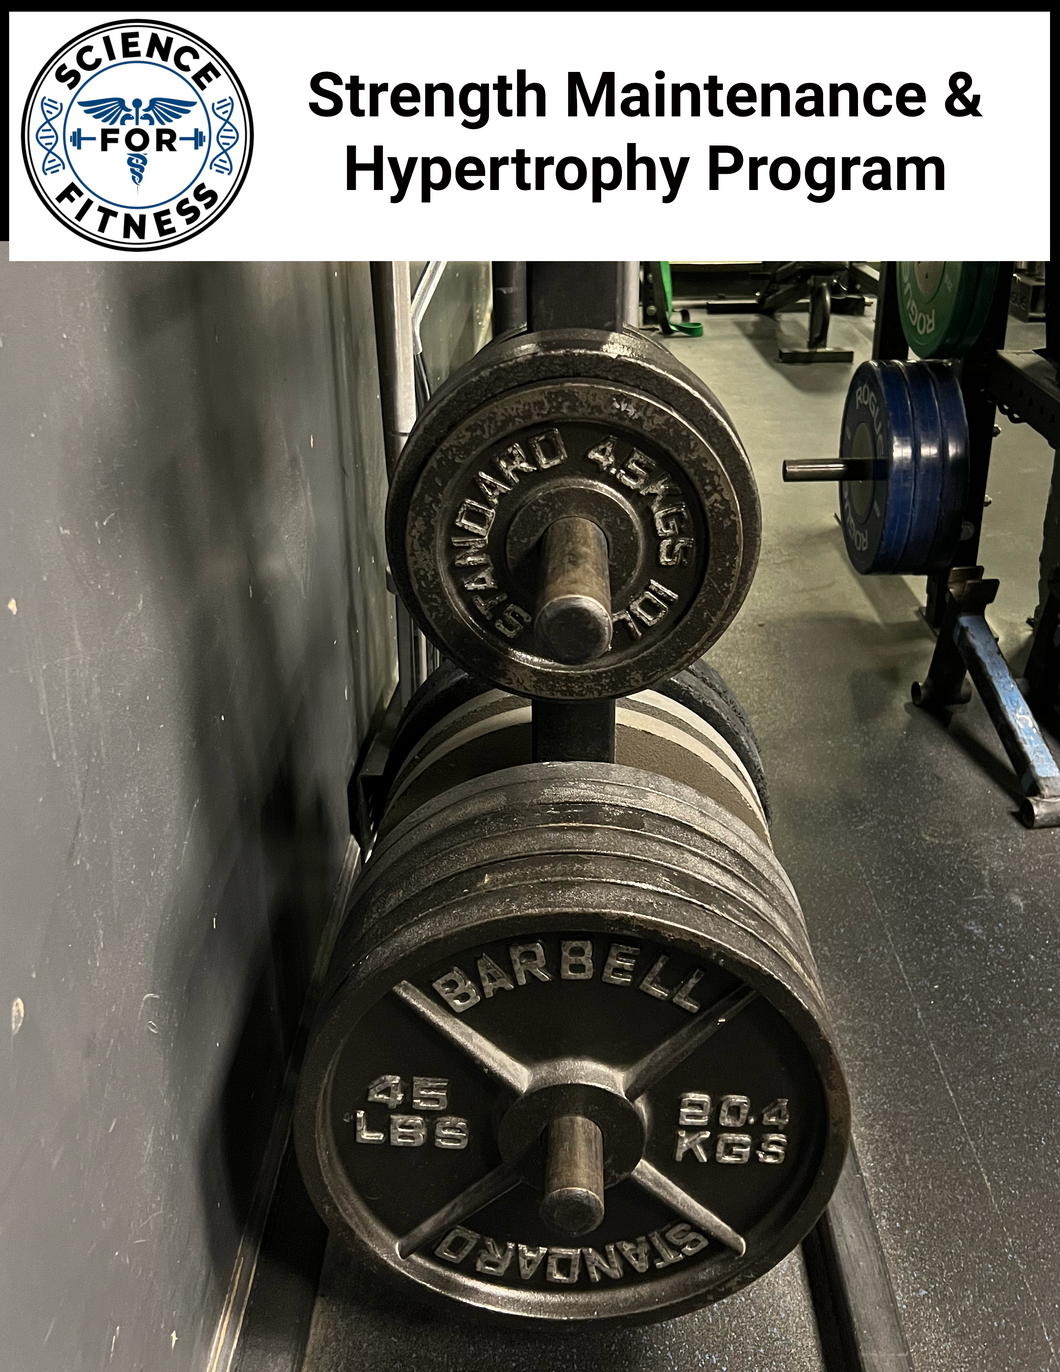 Strength Maintenance & Hypertrophy Program